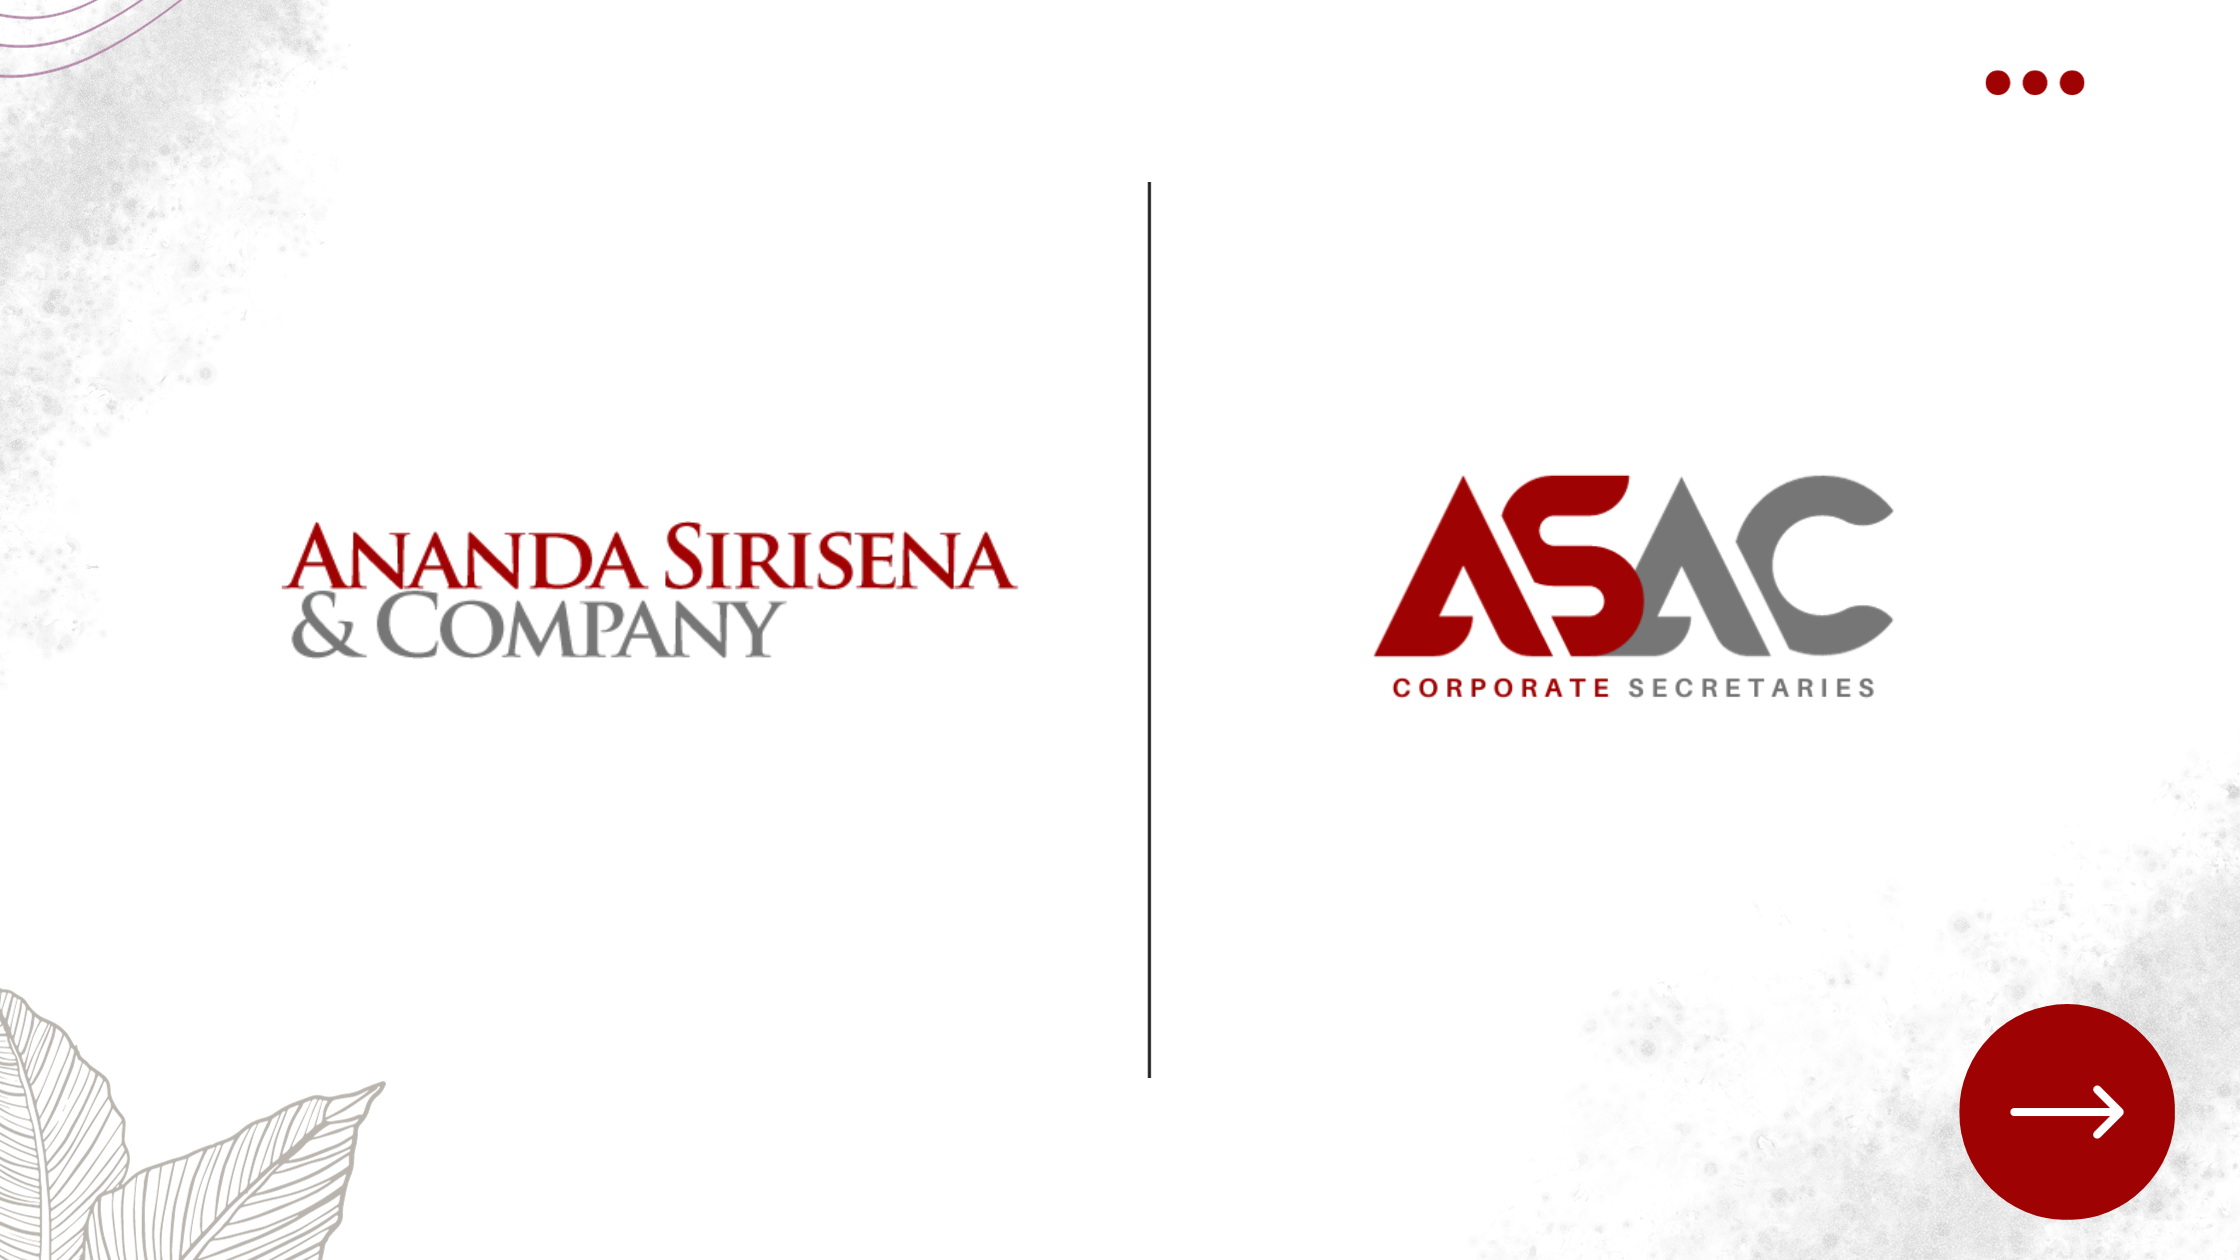 ASAC - Company Secretary Sri Lanka